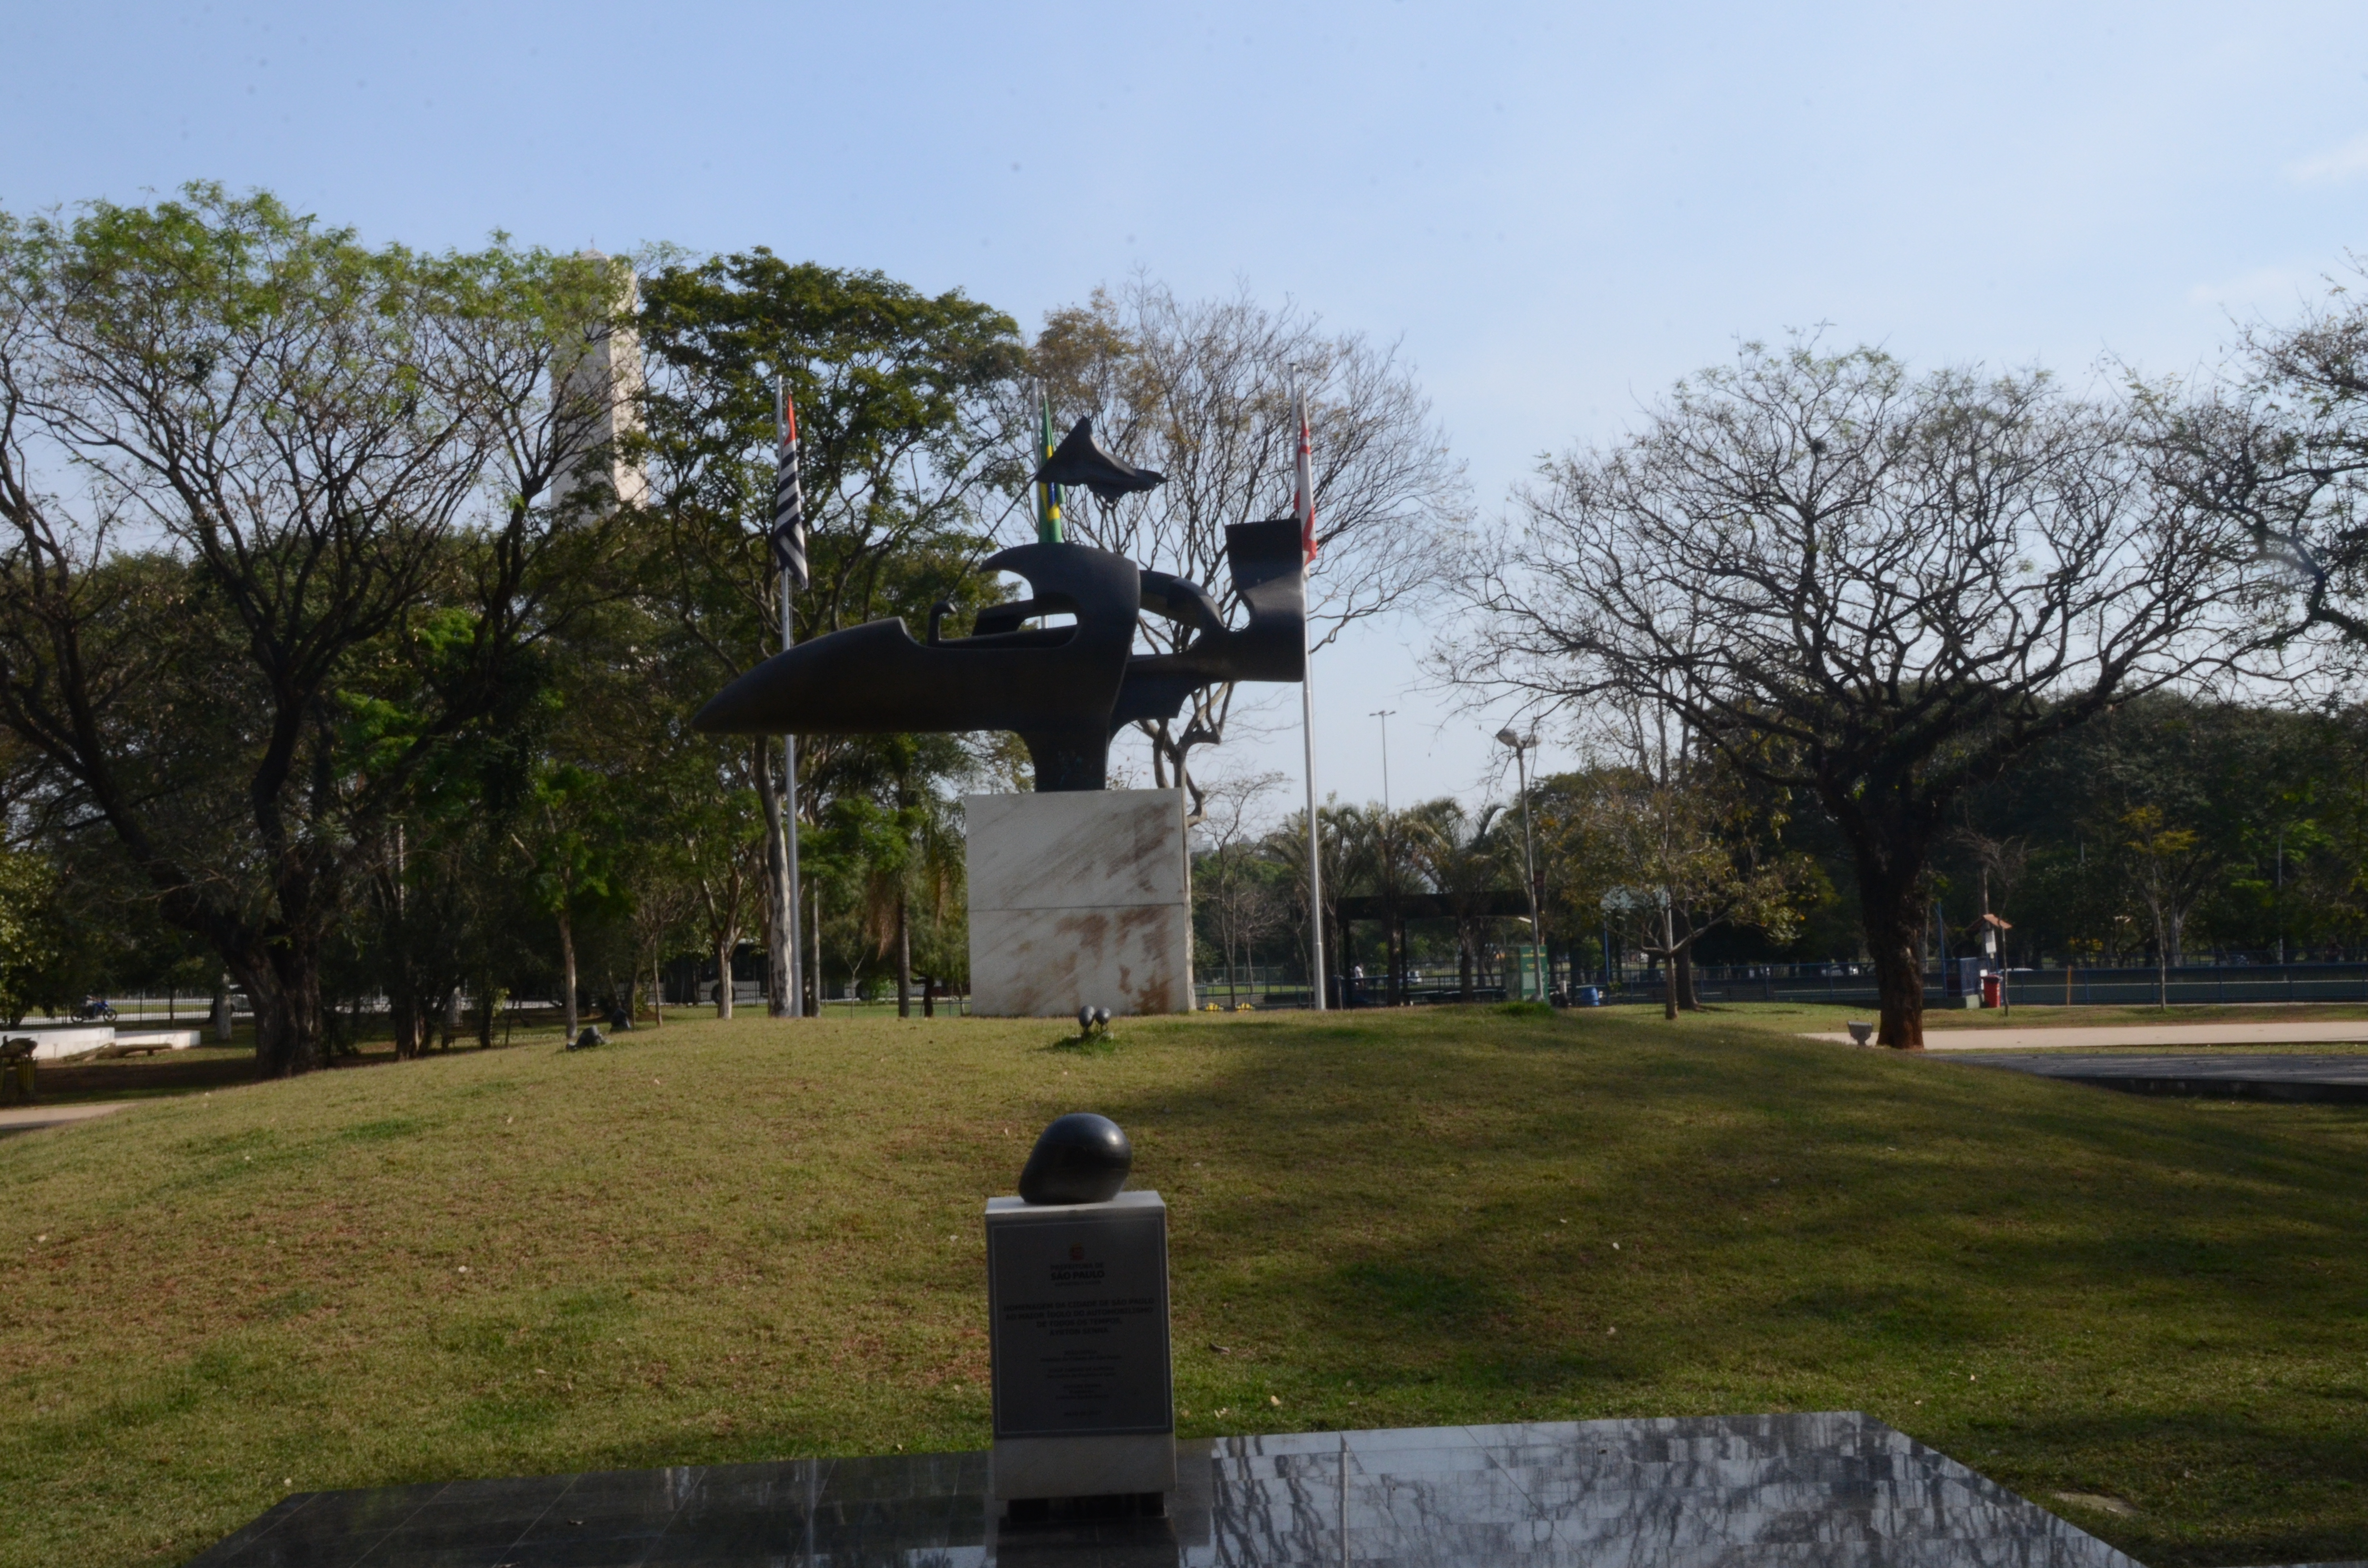 O Modelódromo do Ibirapuera passou a ser gerido pela Secretaria Municipal de Esportes e Lazer a partir de outubro de 2013